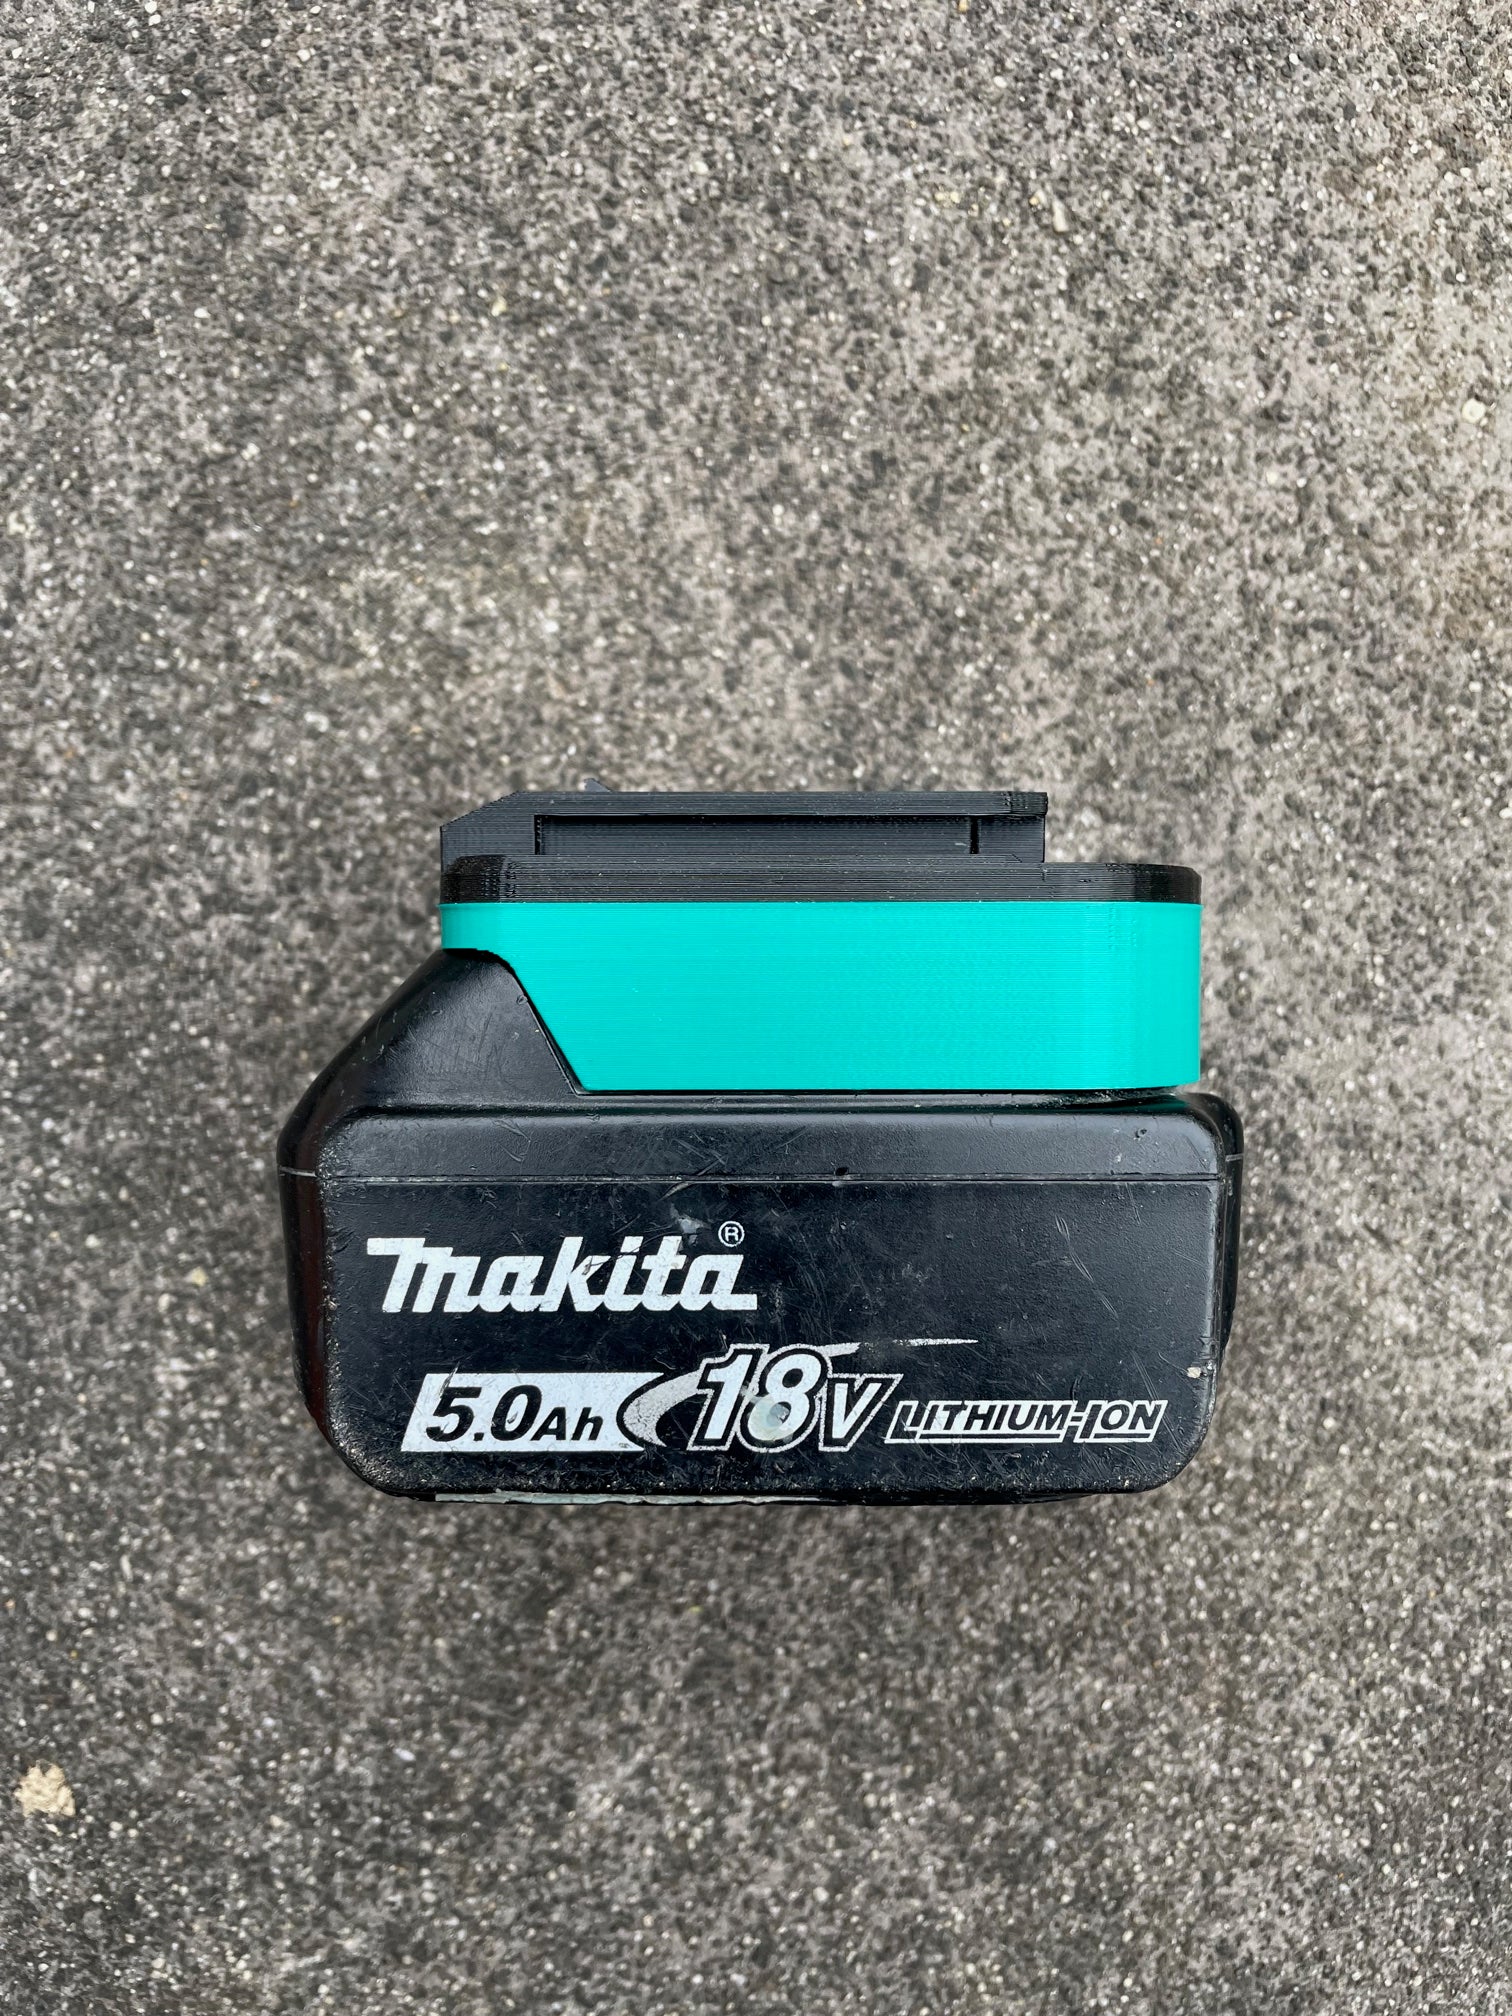 Makita 18v battery adaptor to Ozito tools